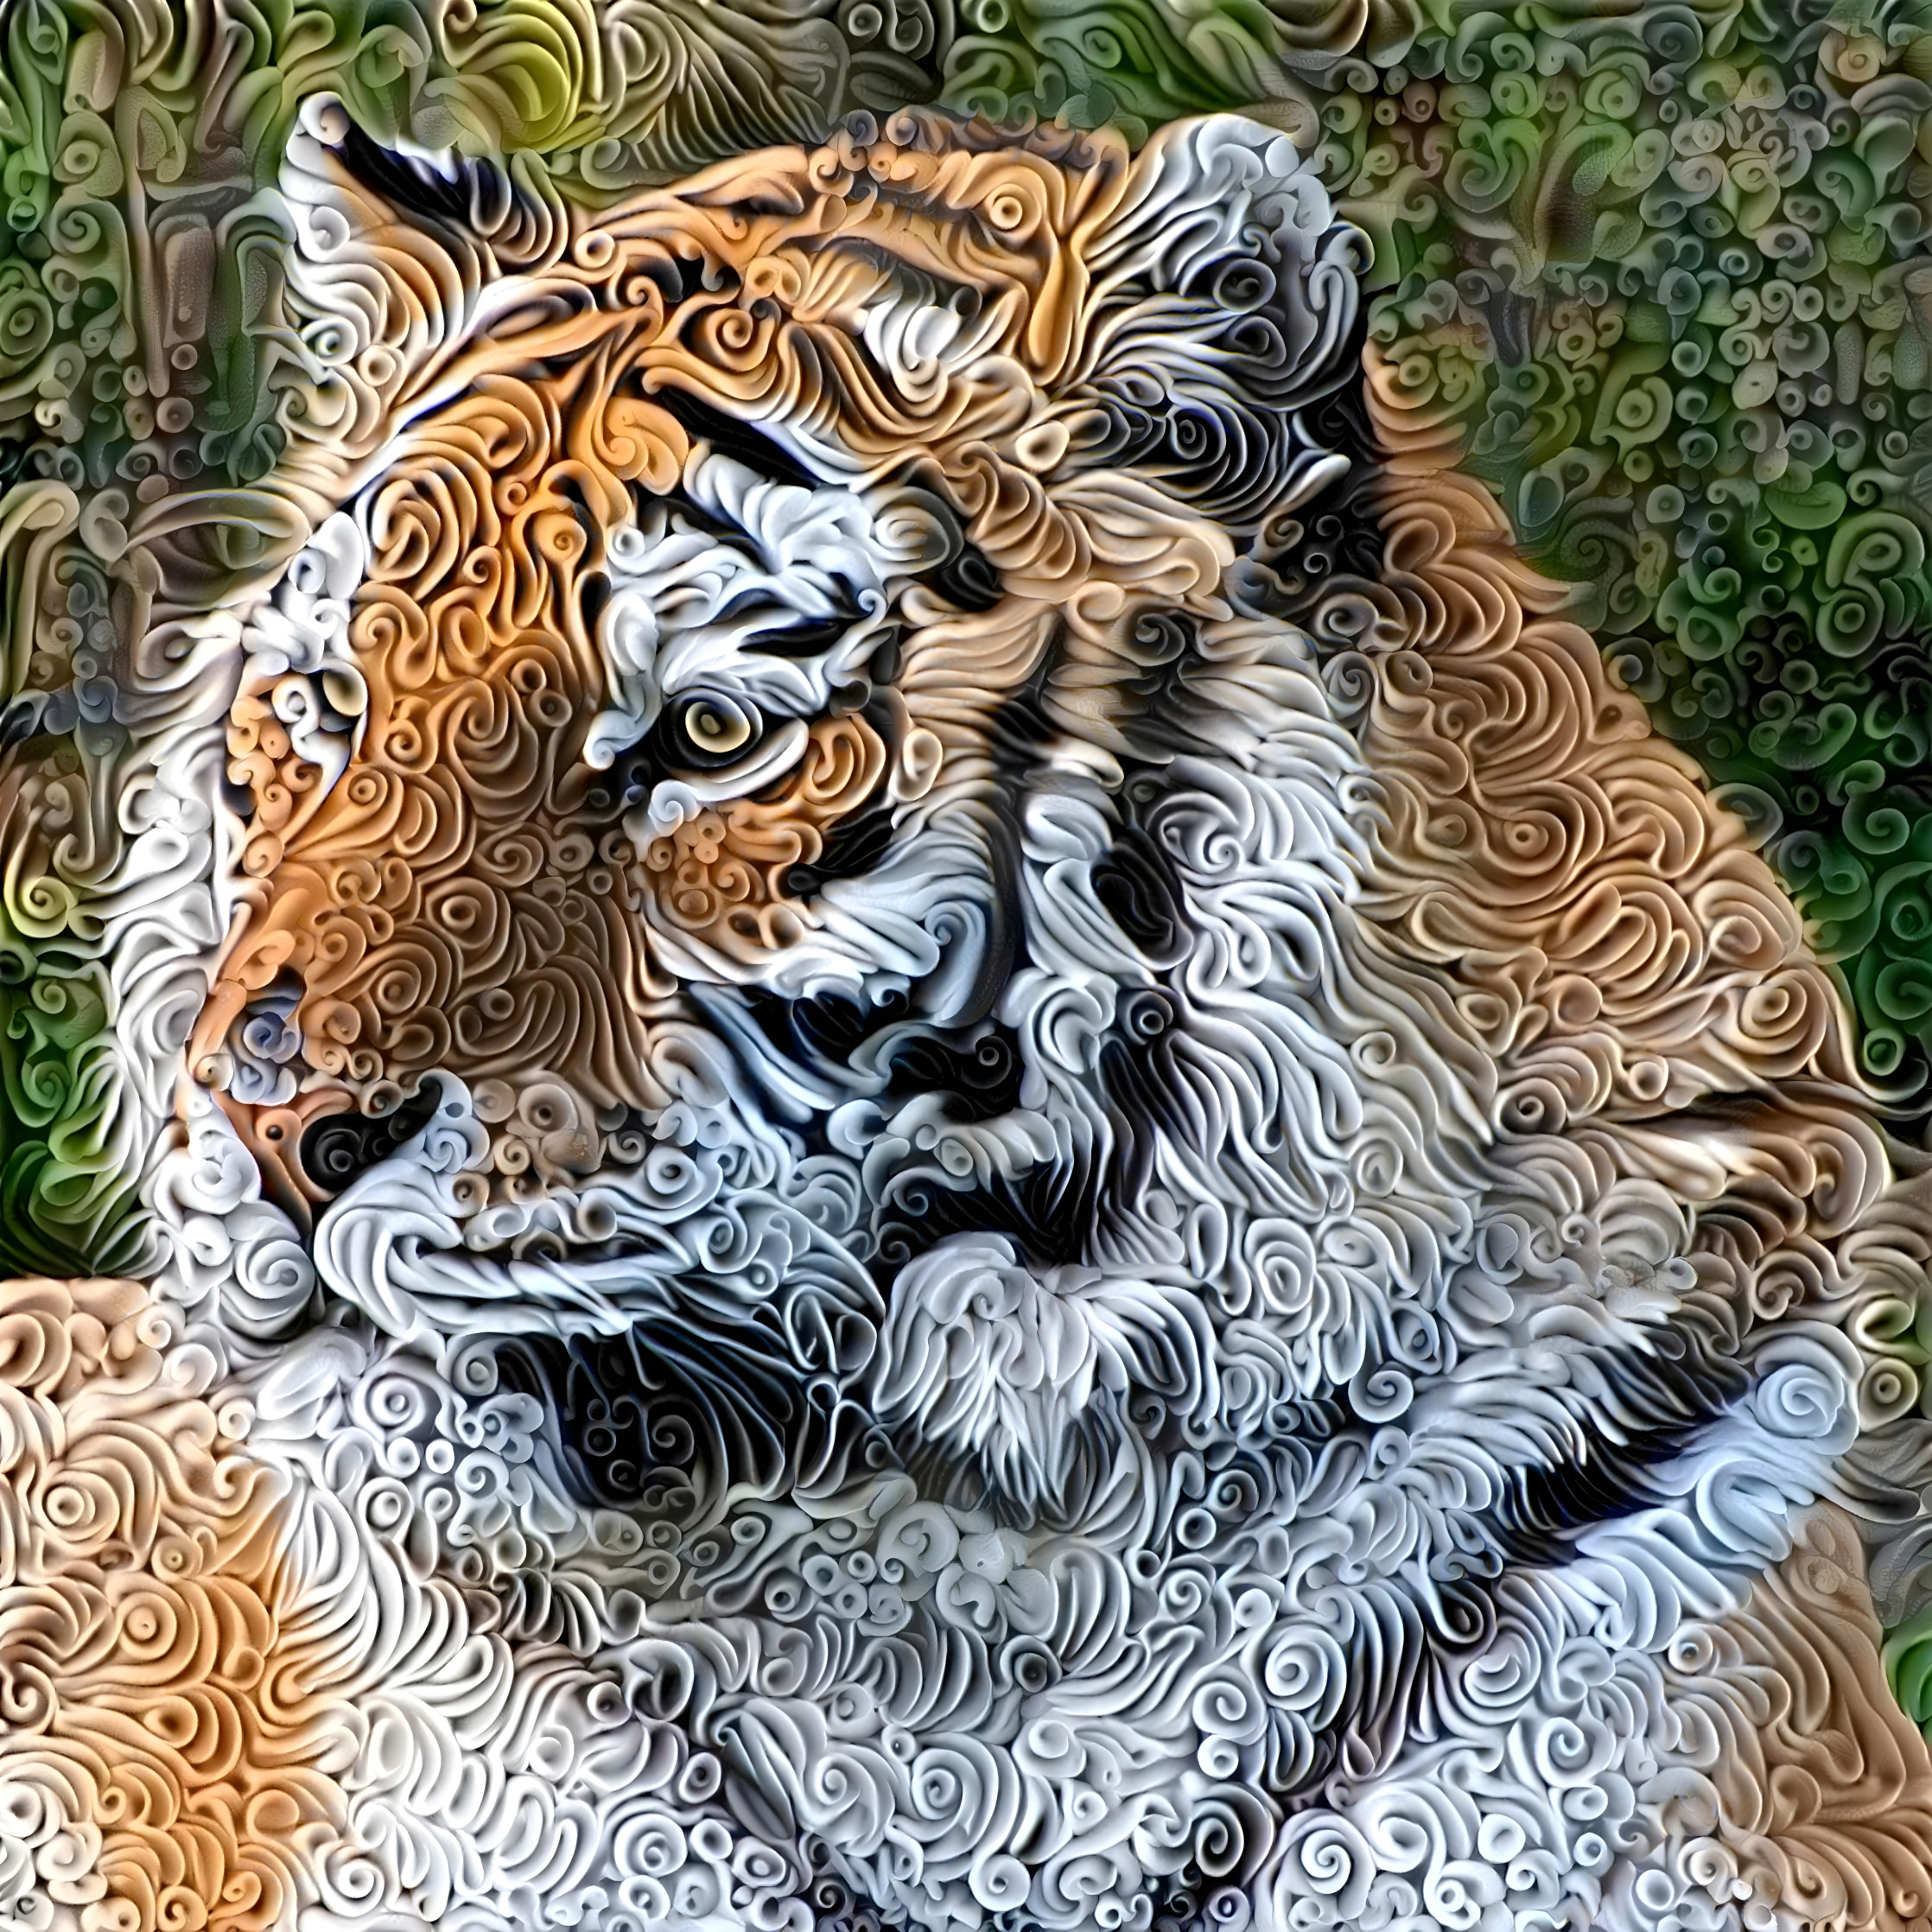 Dream Tiger 2